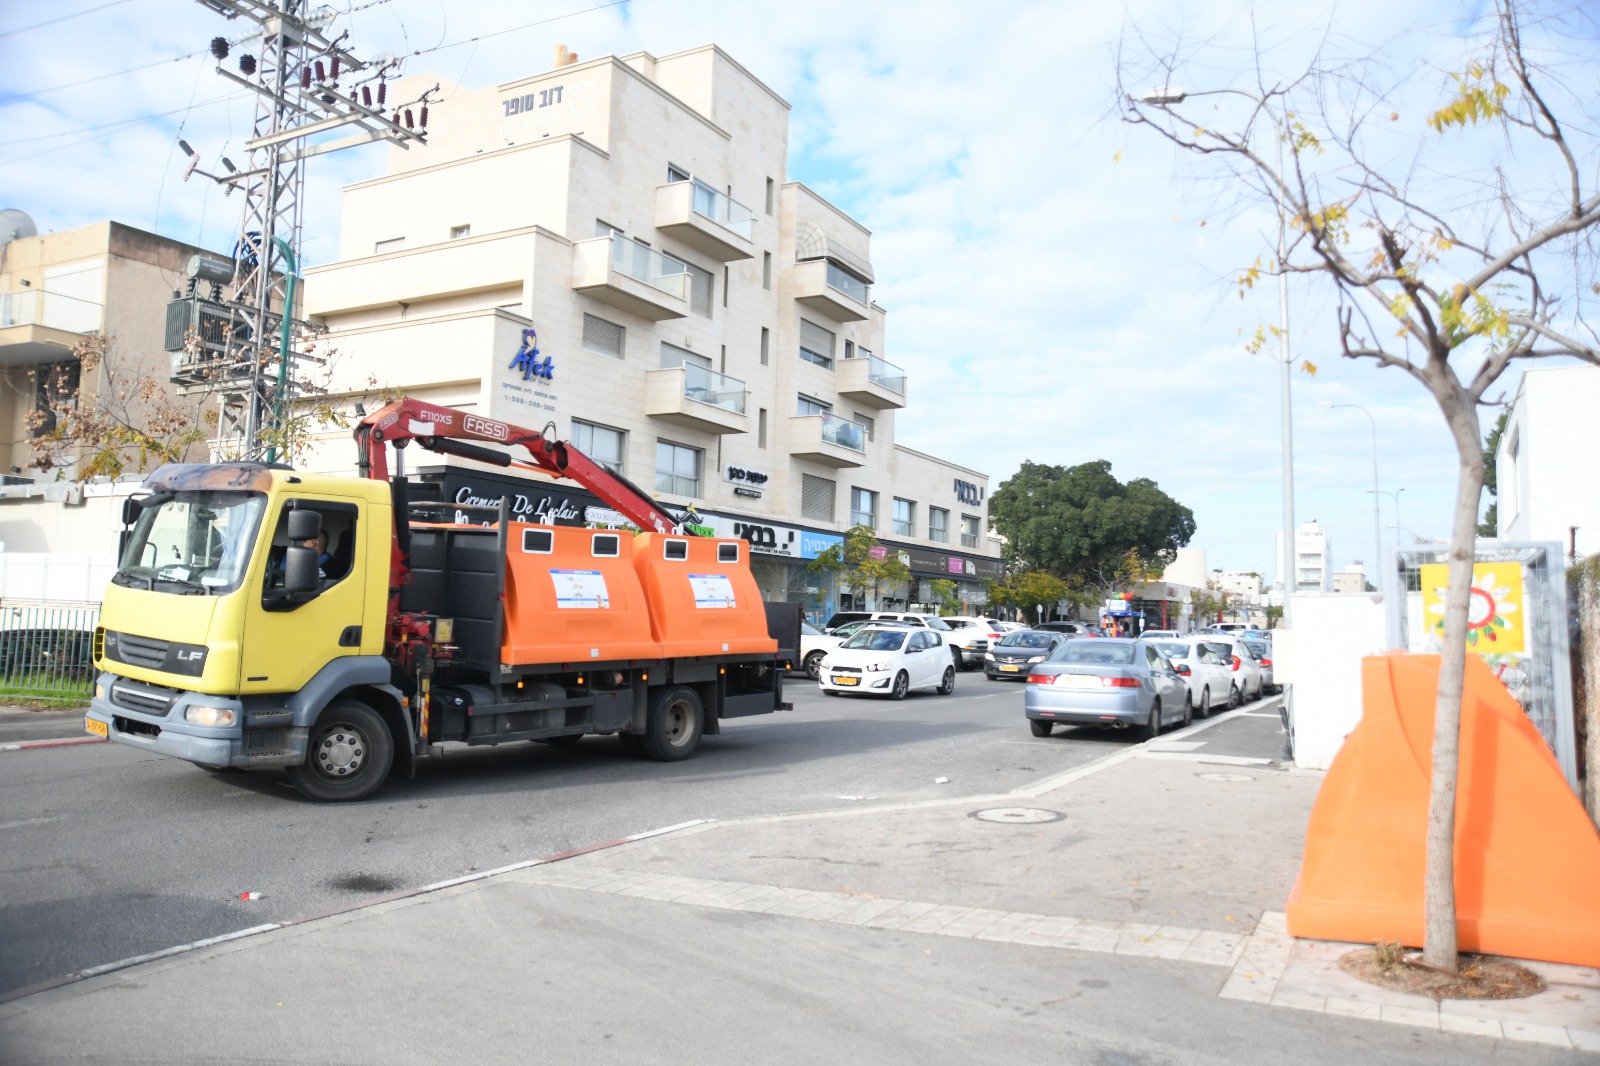 עיריית חיפה החלה בהצבתם של  כ-200 מיכלי מיחזור בקרית חיים ושמואל, על פי תוכנית העבודה שהכינה לפני כשנה